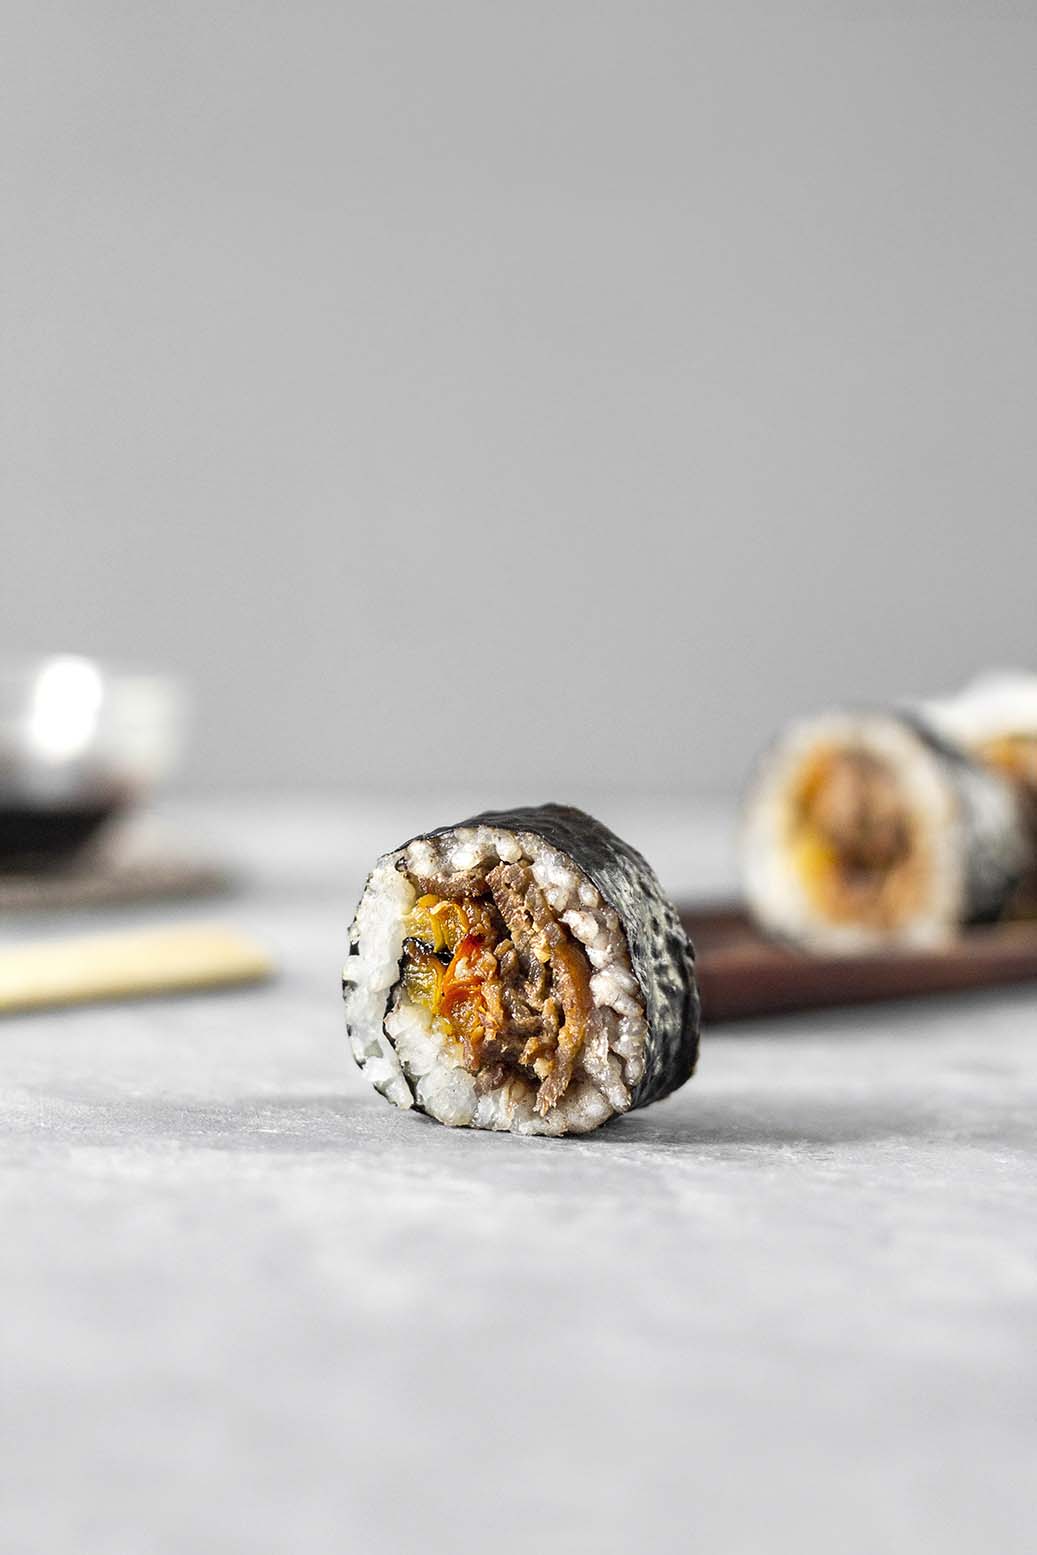 https://thesweetbalance.net/recipes/savoury/homemade-sushi/attachment/homemade-urumaki-and-futomaki-sushi-rolls-4/